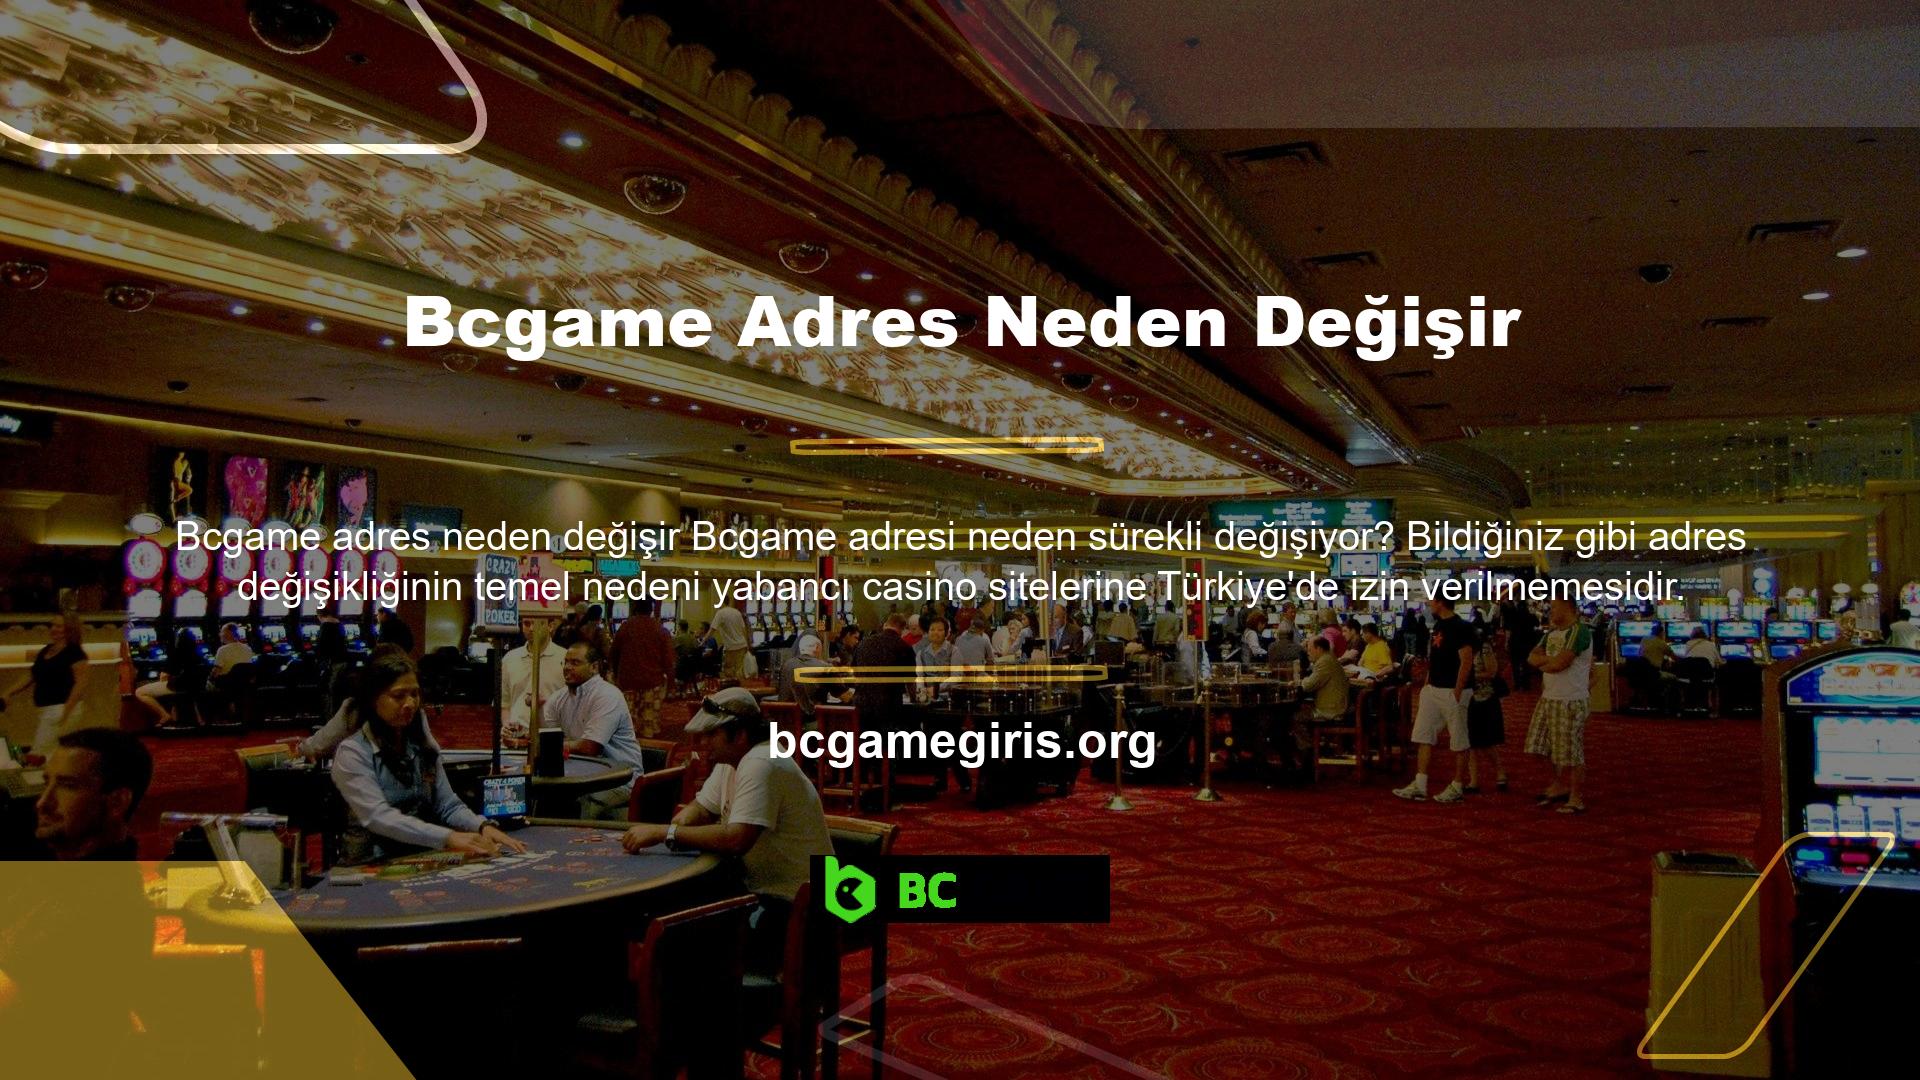 Bcgame aynı zamanda Türk yasadışı casino sitesi, yabancı casino sitesi ve yabancı casino sitesi olarak da kullanılmaktadır